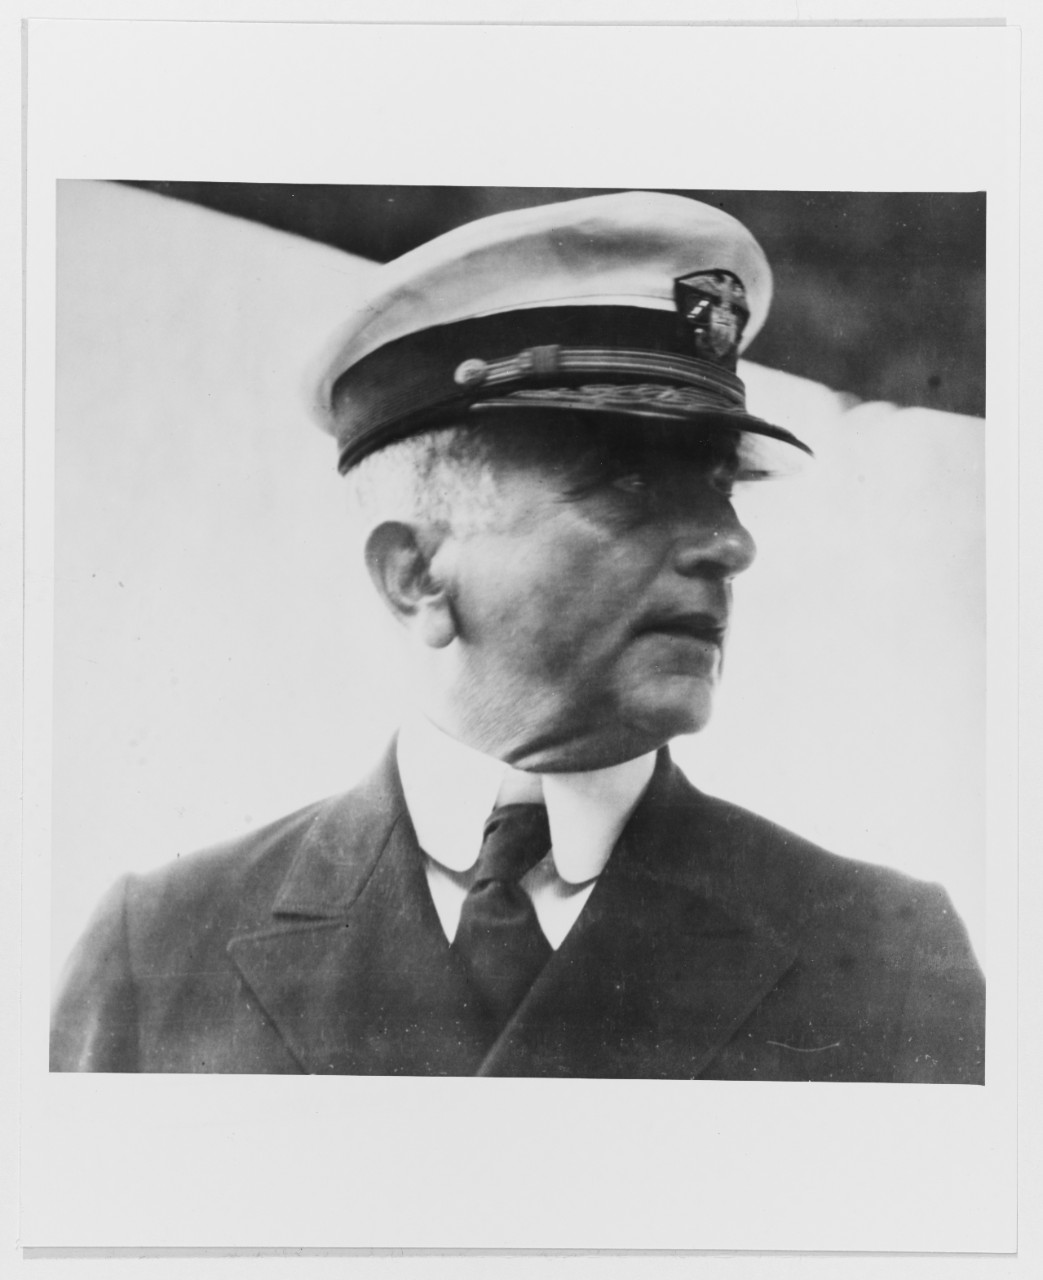 John H. Dayton